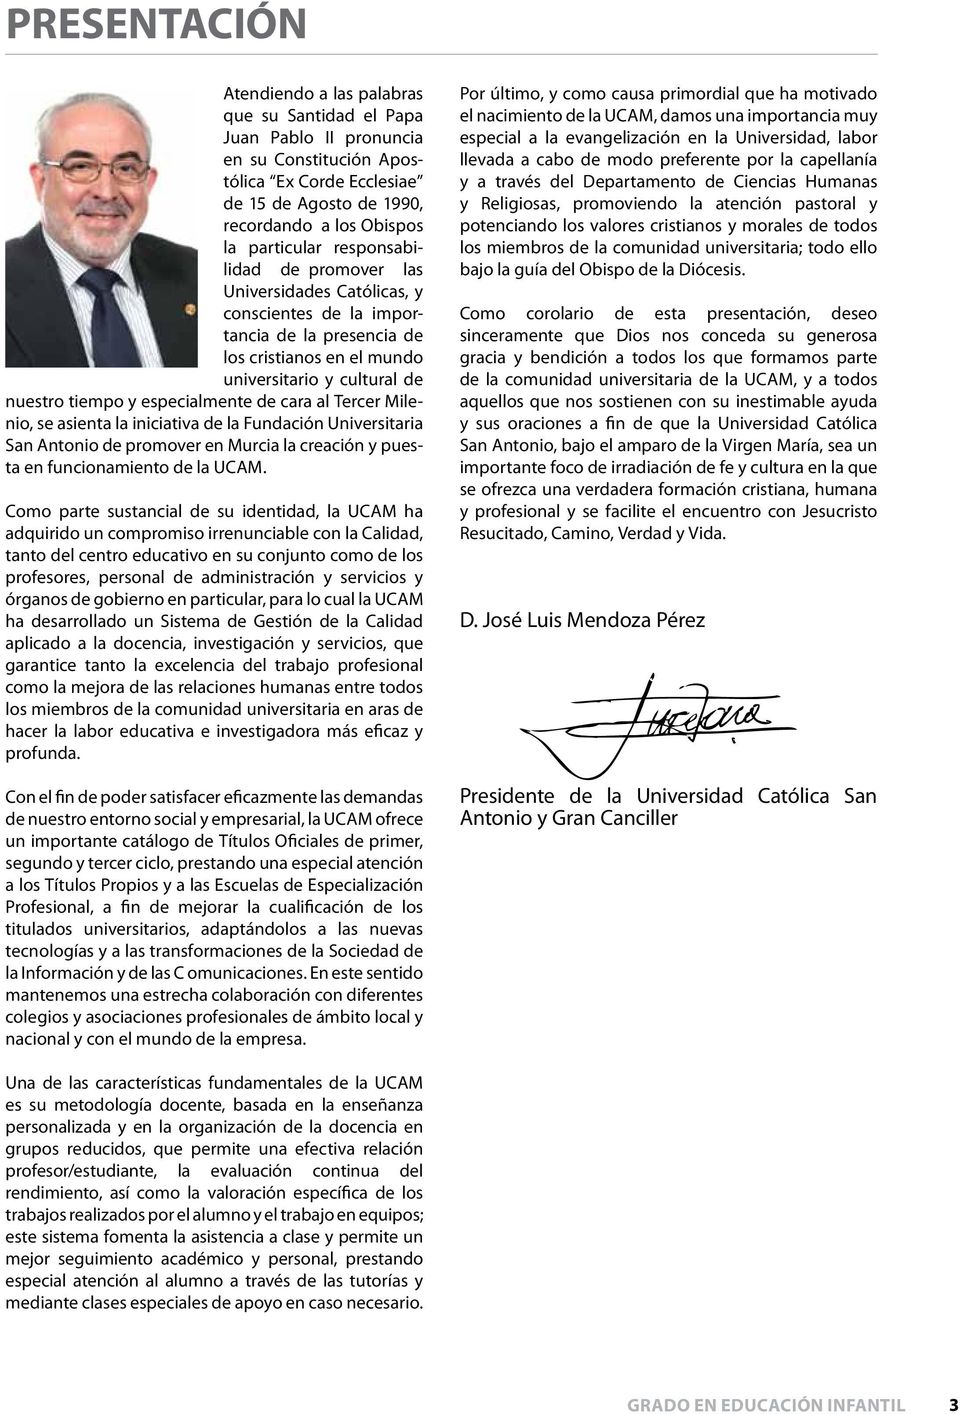 cara al Tercer Milenio, se asienta la iniciativa de la Fundación Universitaria San Antonio de promover en Murcia la creación y puesta en funcionamiento de la UCAM.